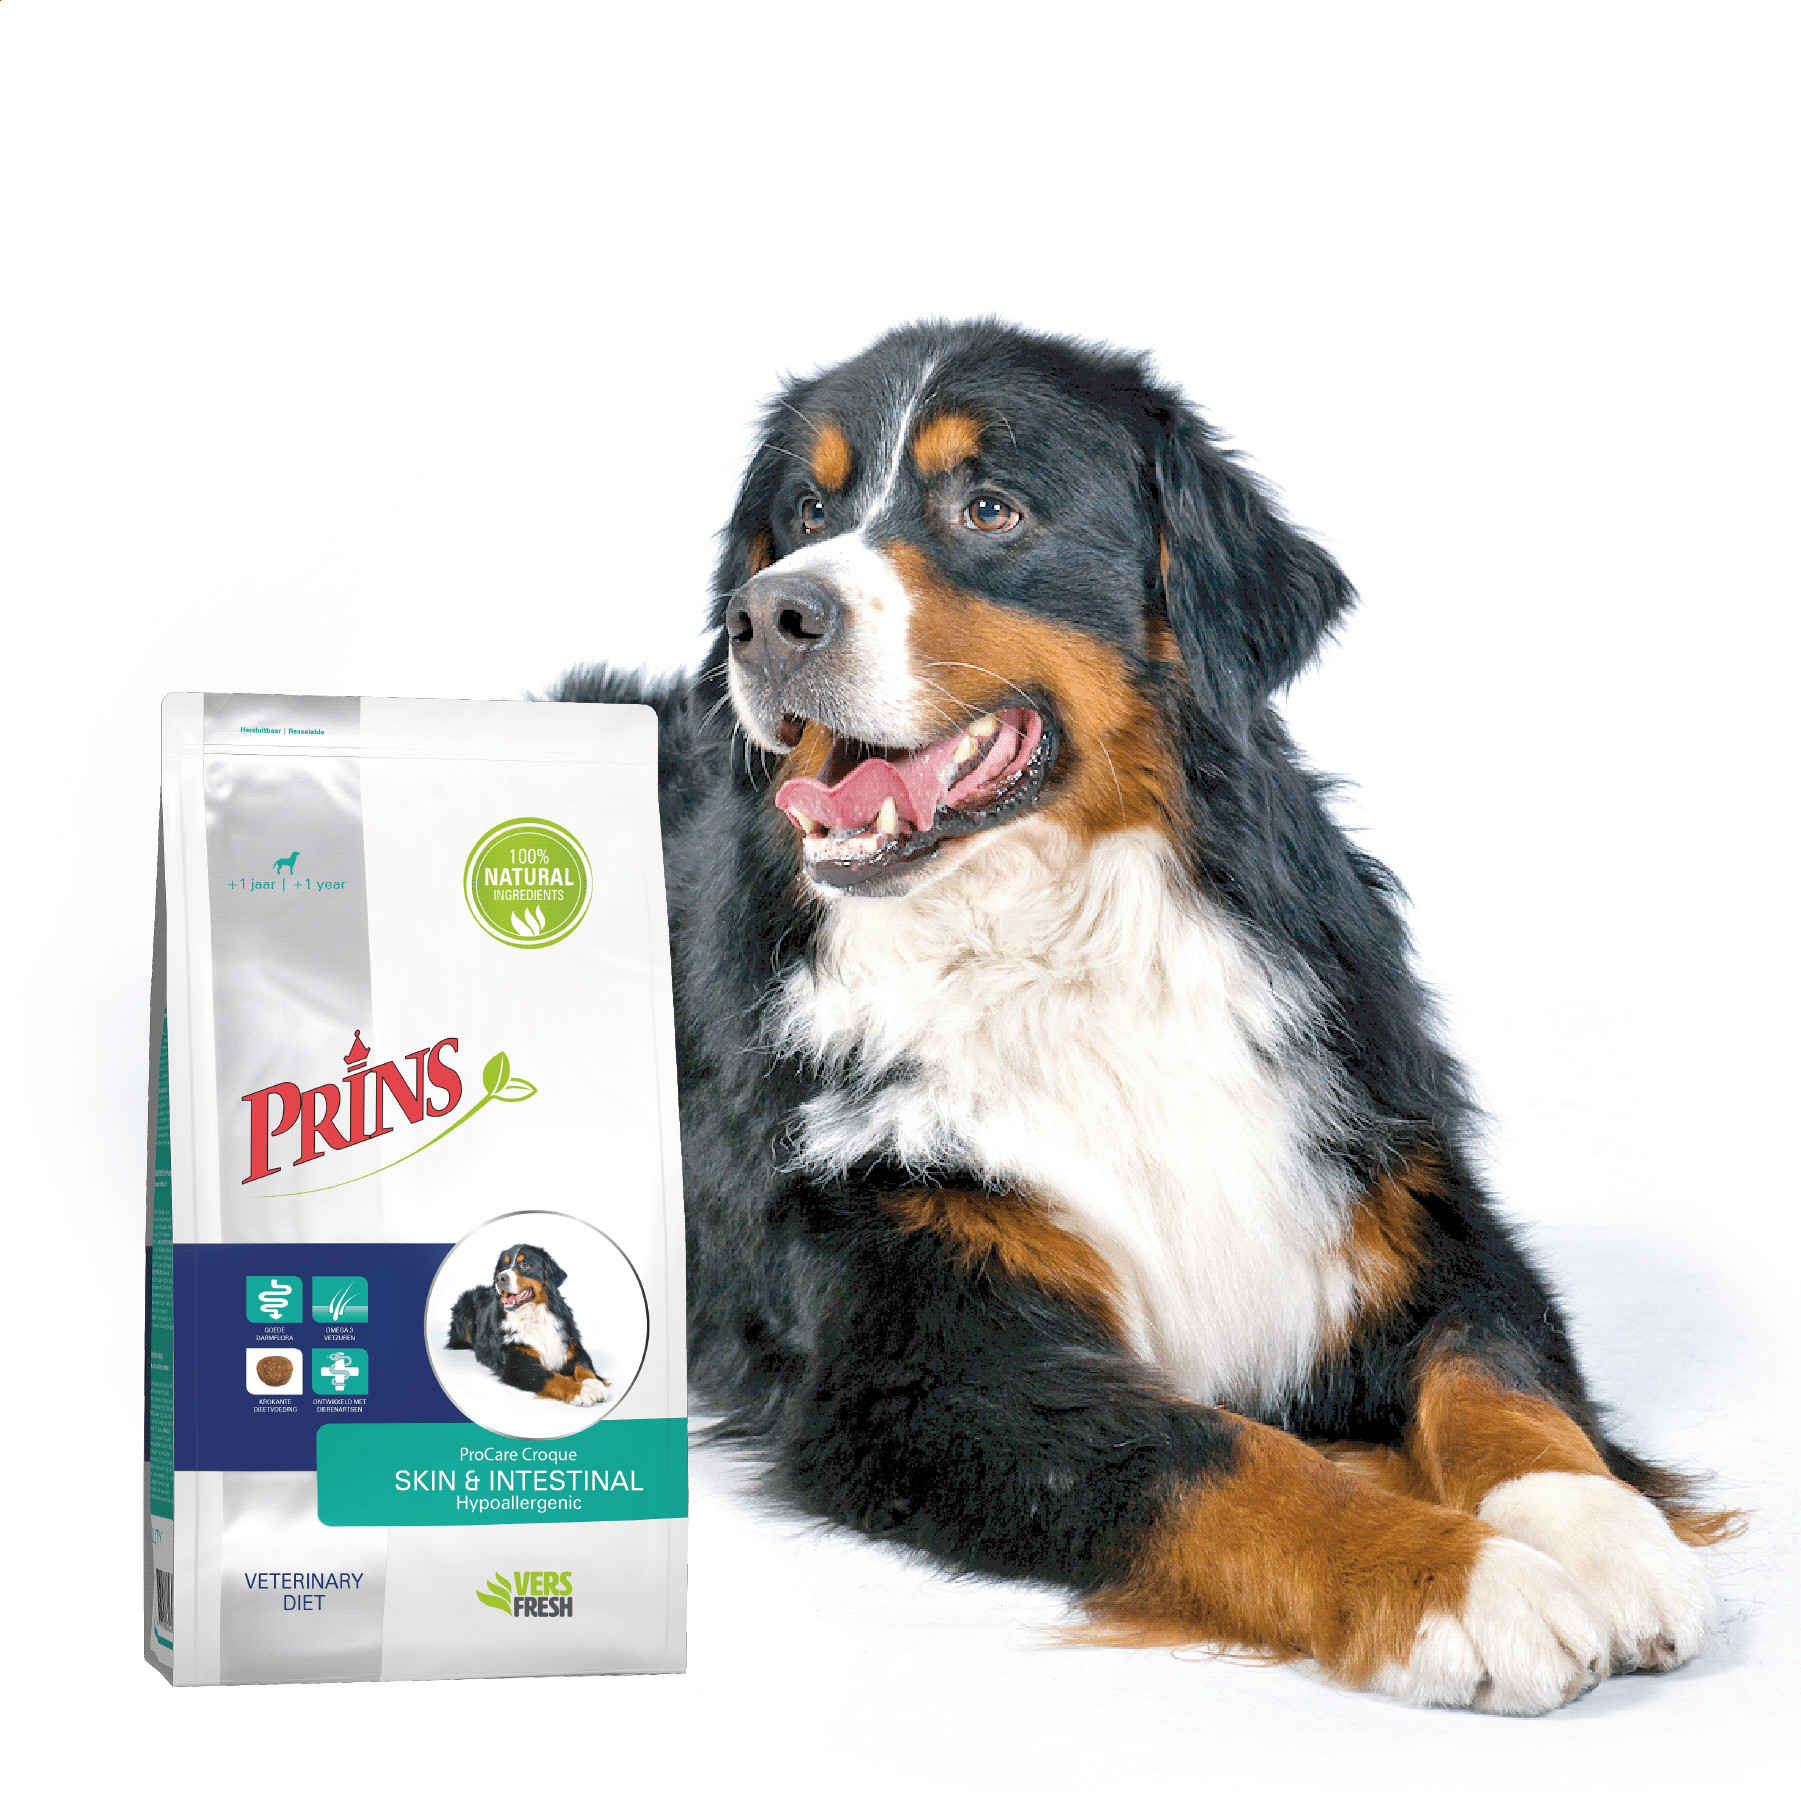 Prins Procare Croque Dieet Skin & Intestinal Hypoallergic voor de hond